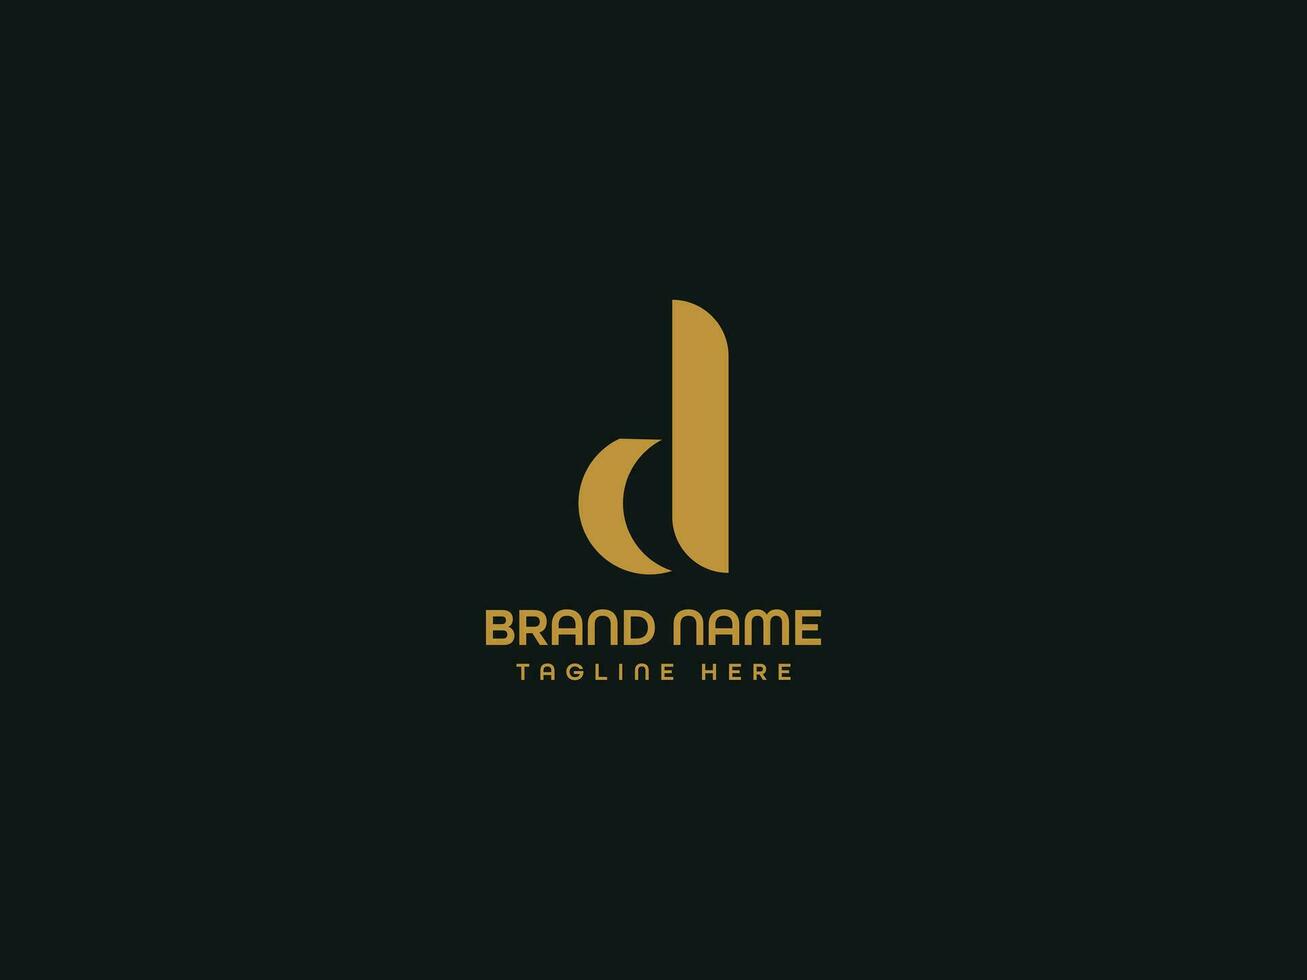 vogel brief bedrijf logo ontwerp vector